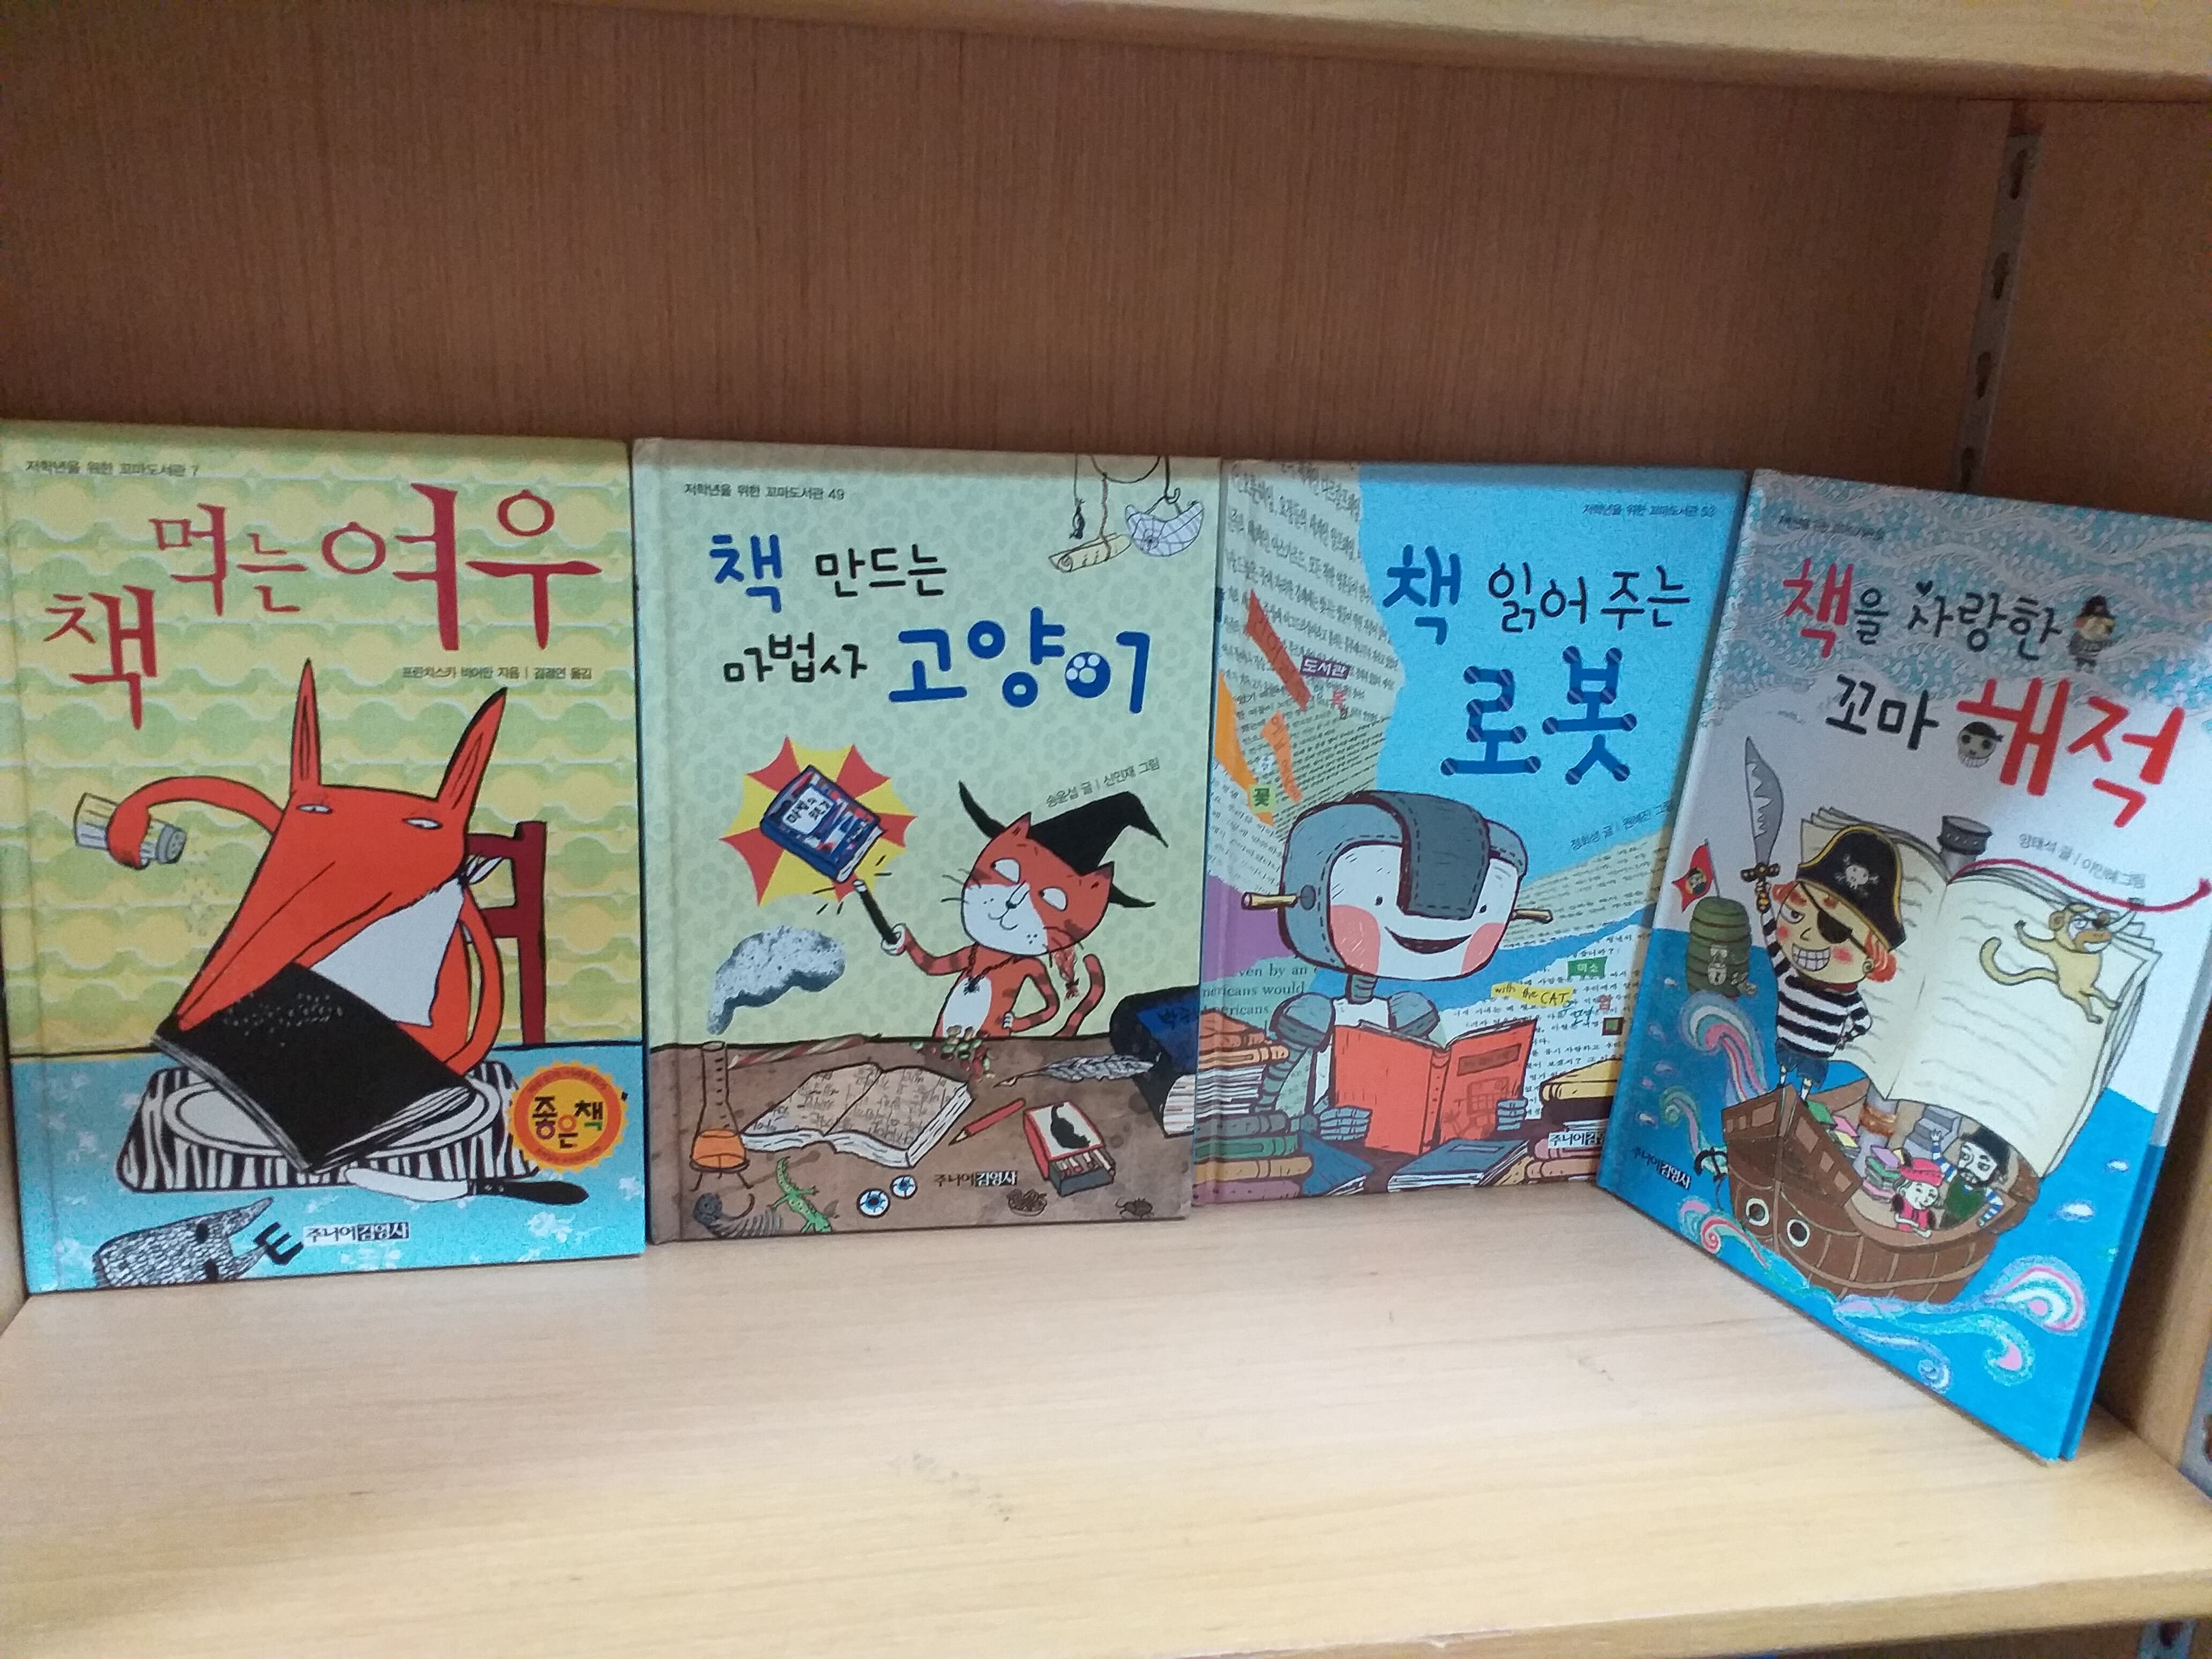 김영사 저학년 꼬마도서관 7권세트 (책읽어주는 로봇, 책 먹는 여우, 마법사 고양이,꼬마해적등)